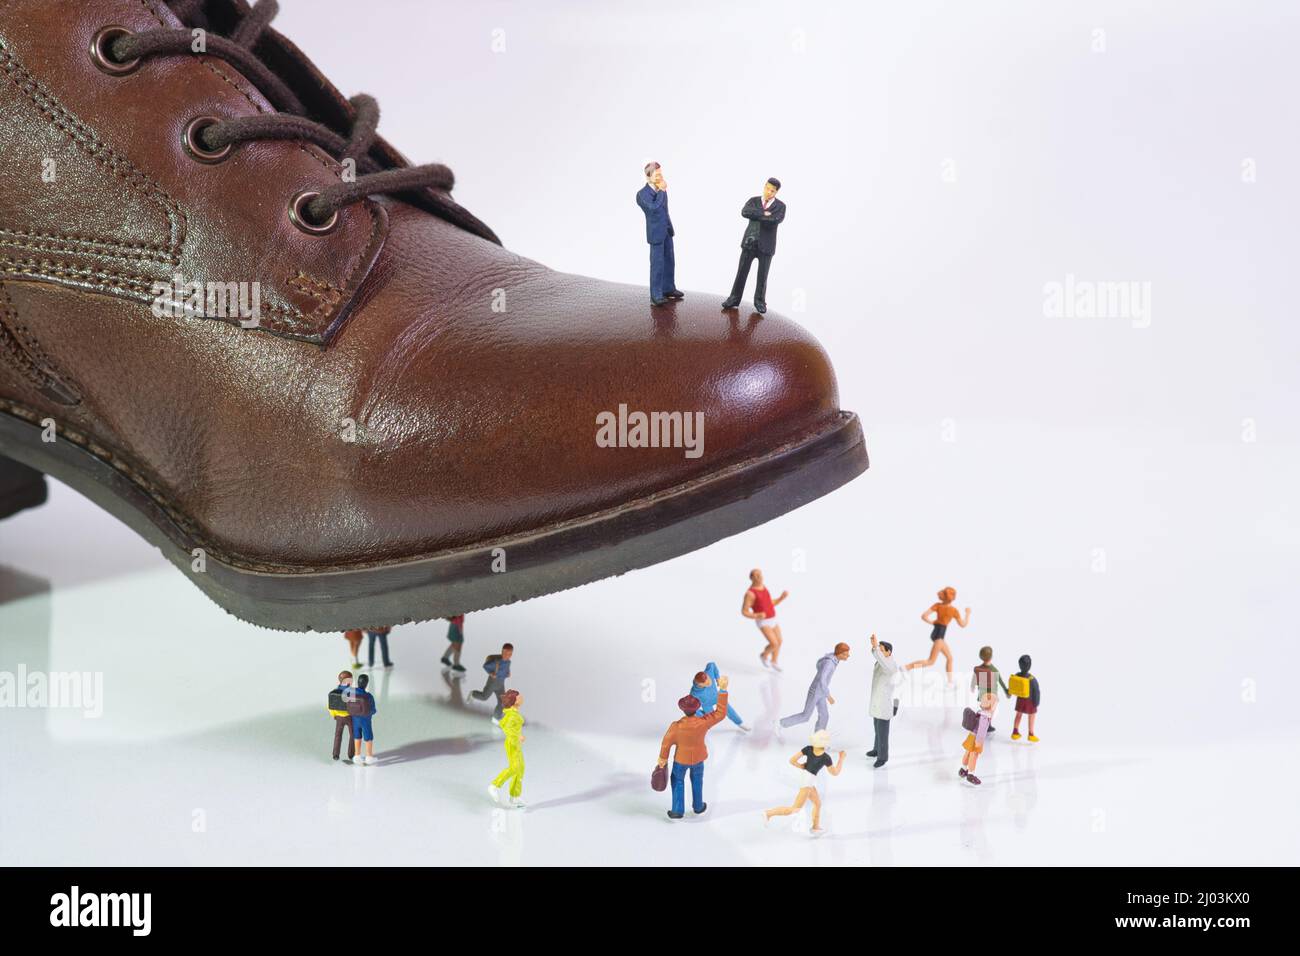 due potenti uomini d'affari si levano in piedi su una scarpa che passi sulla gente in fuga Foto Stock